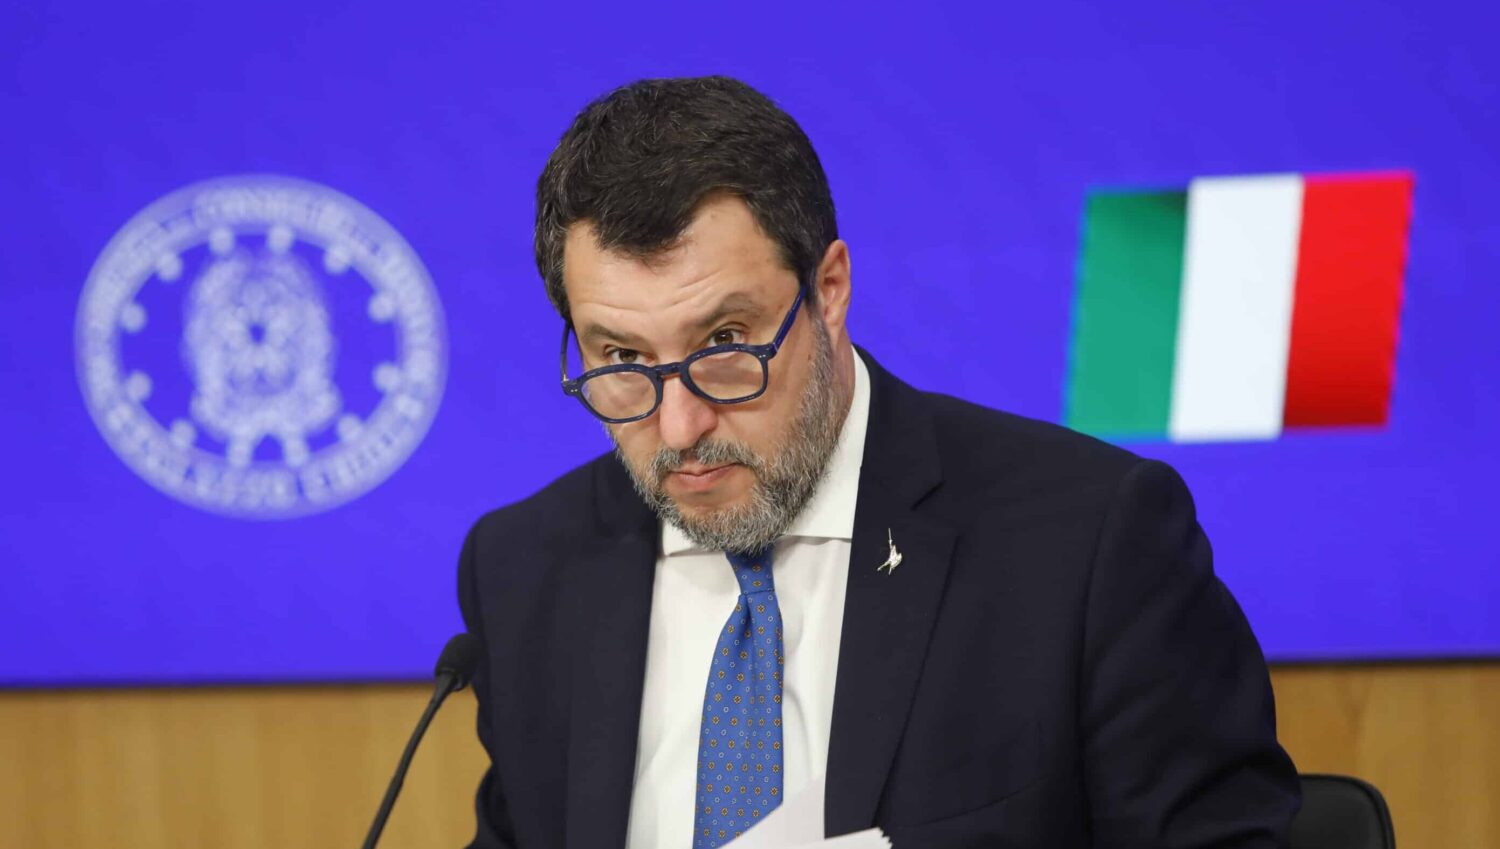 Guerra di successione nella Lega. Salvini rischia la fine di Renzi